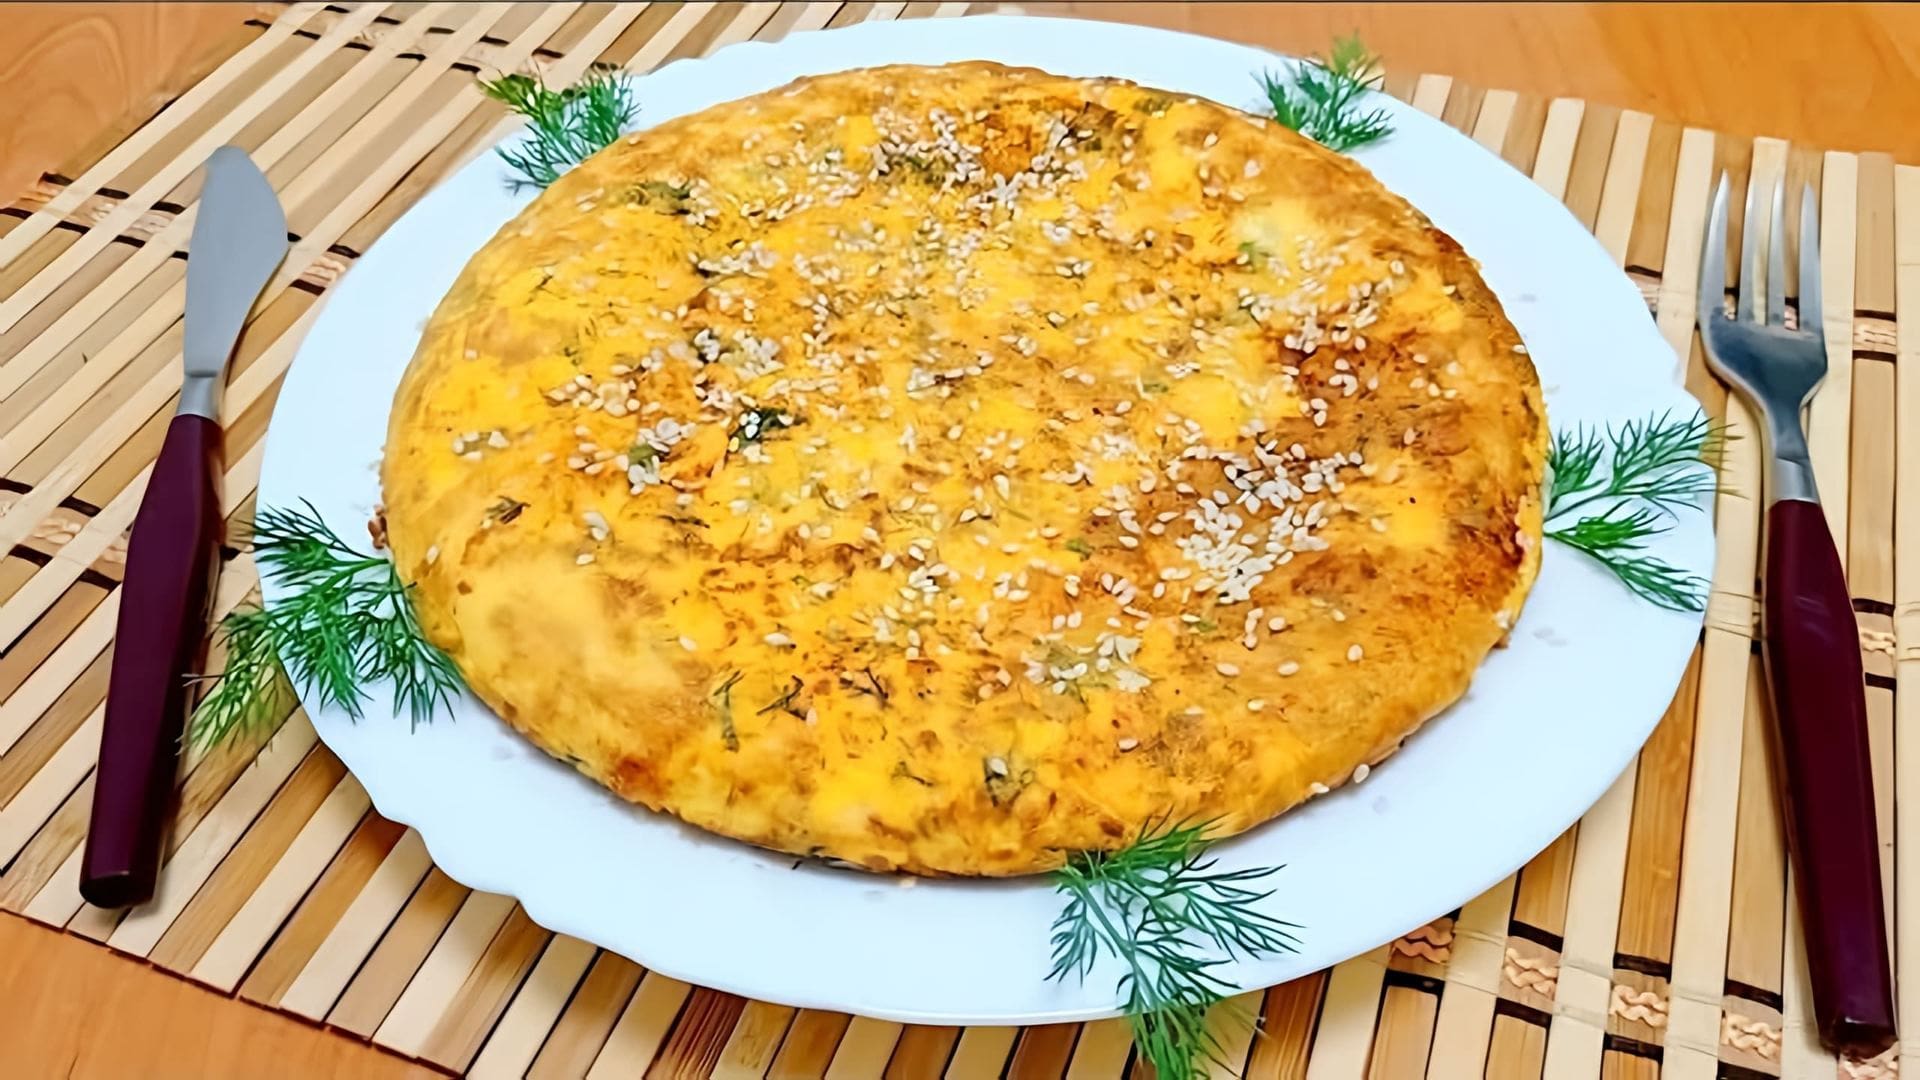 В этом видео демонстрируется быстрый и простой рецепт приготовления тыквенного омлета